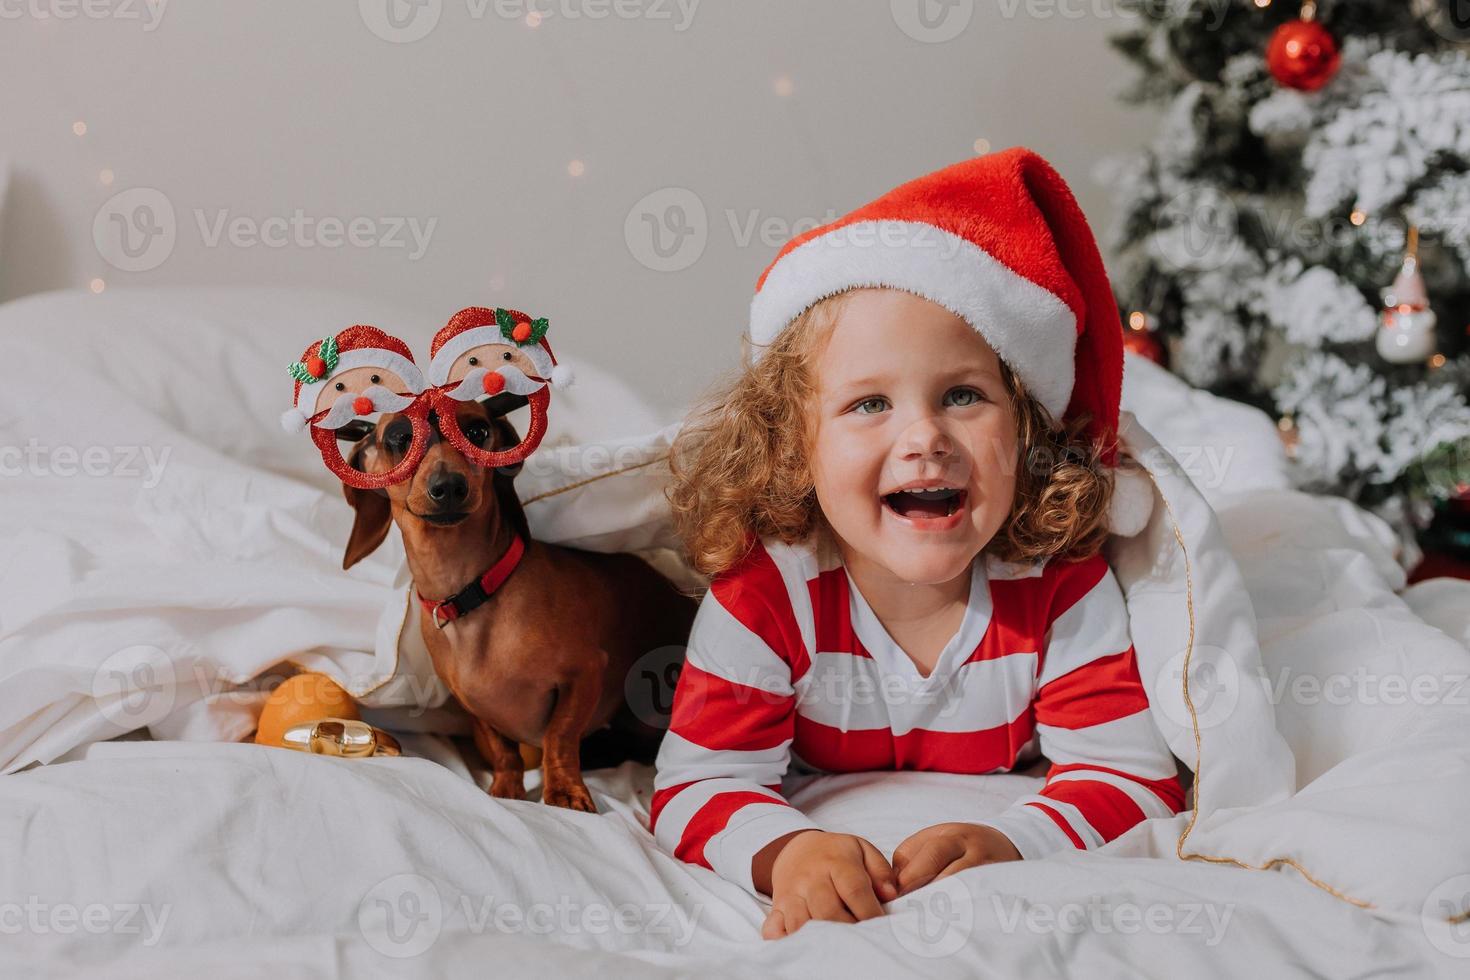 menina de pijama listrado e um chapéu de papai noel e cachorro de óculos engraçados com papai noel estão deitados na cama em um lençol branco no contexto da árvore de natal. espaço para texto. foto de alta qualidade